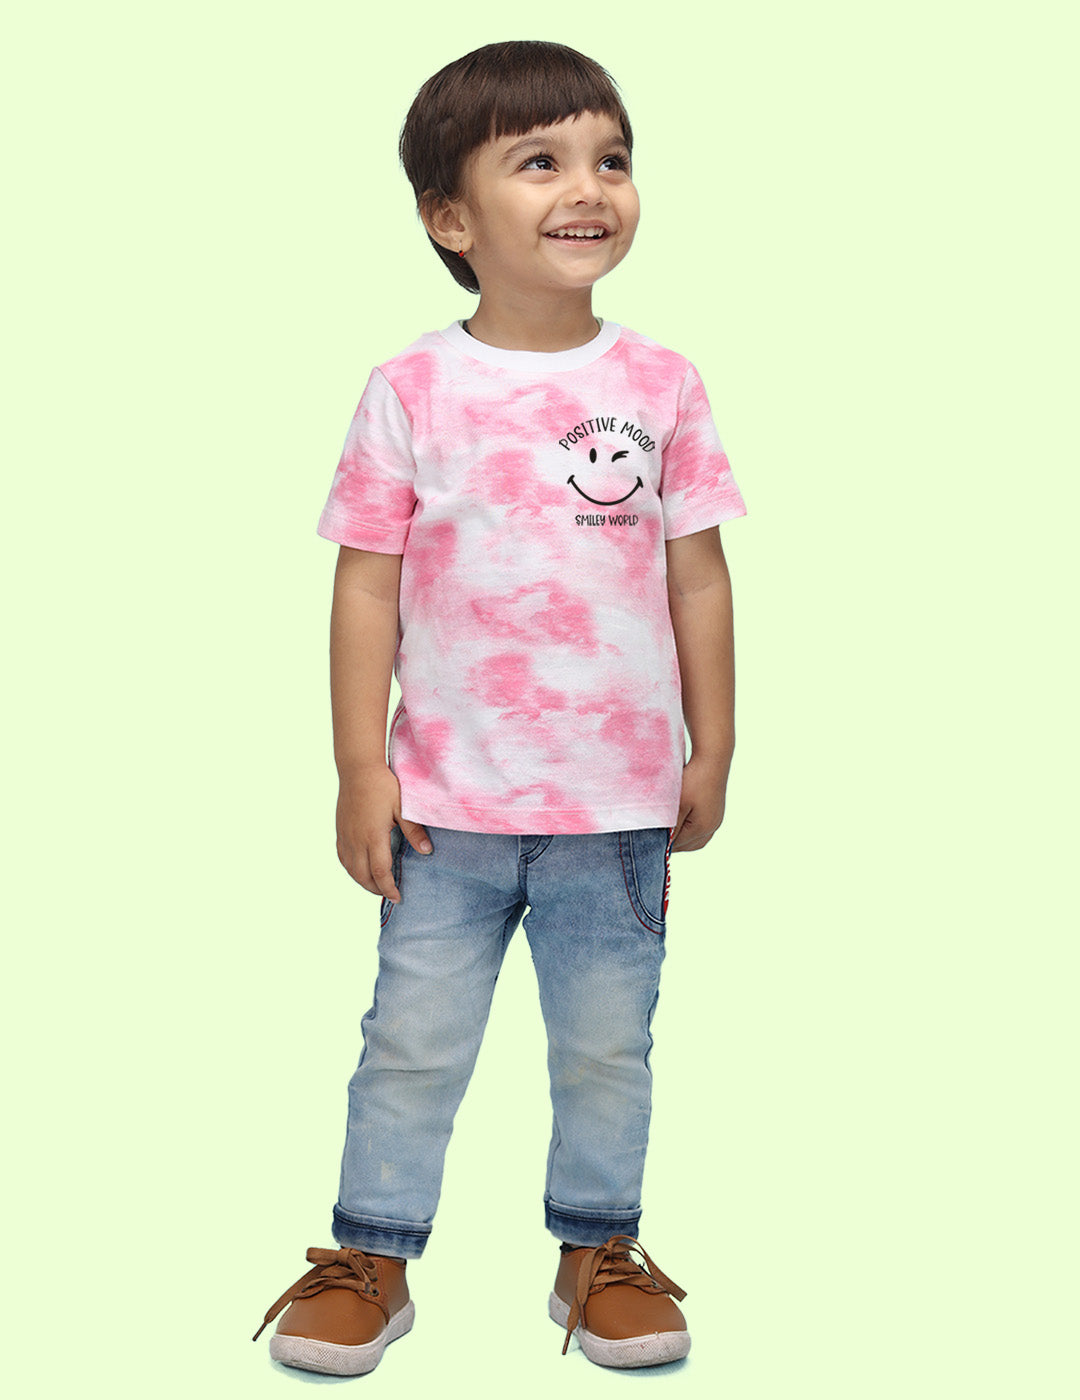 Nusyl infants pink positive mood printed Tie & Dye tshirt.